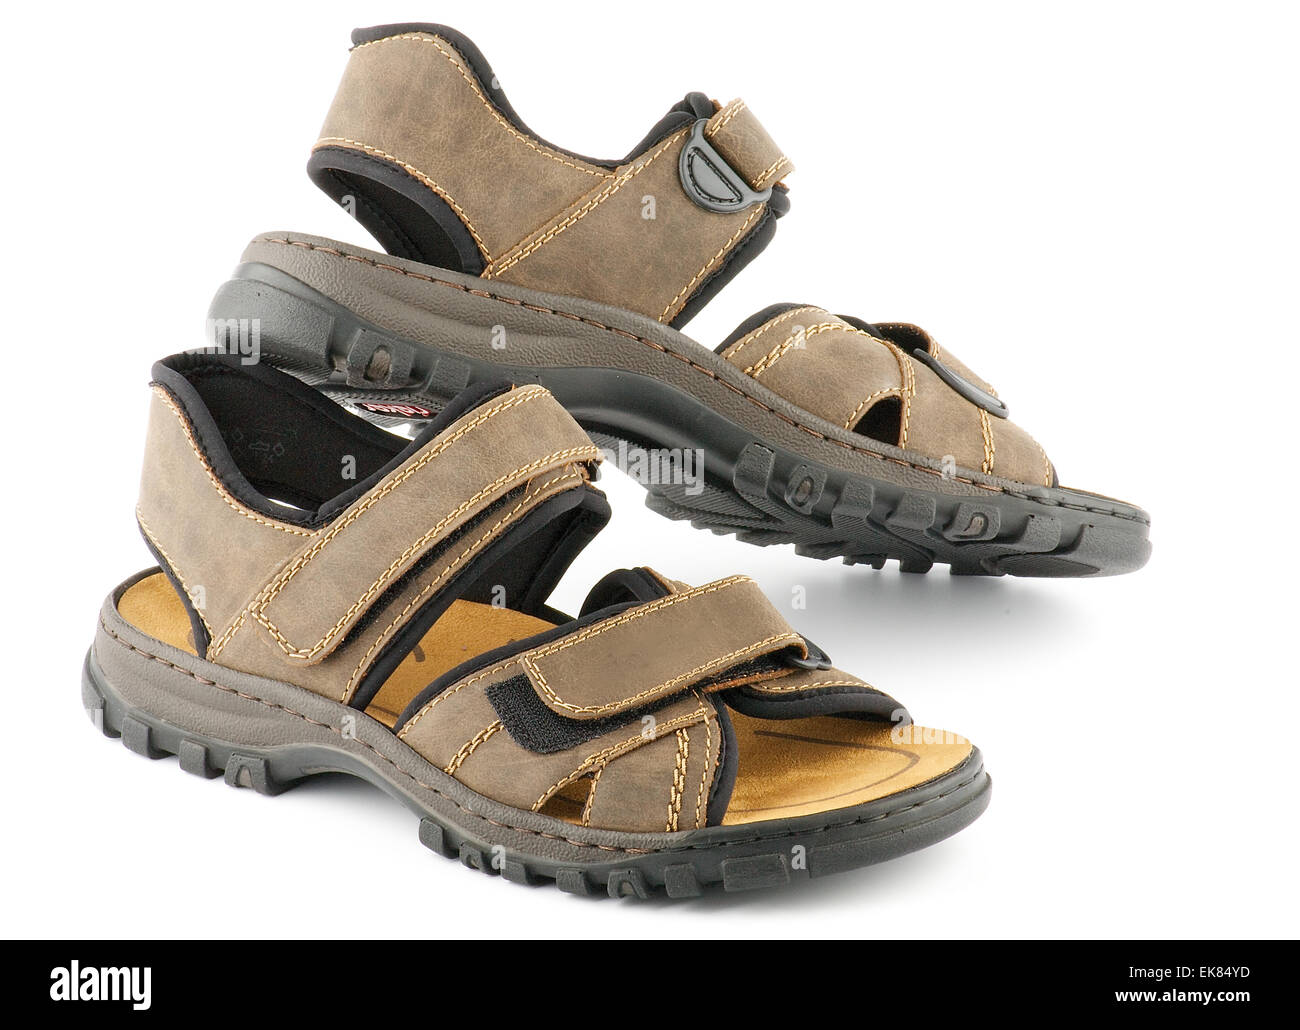 Brown man's chaussures sandales avec fermeture Velcro Banque D'Images